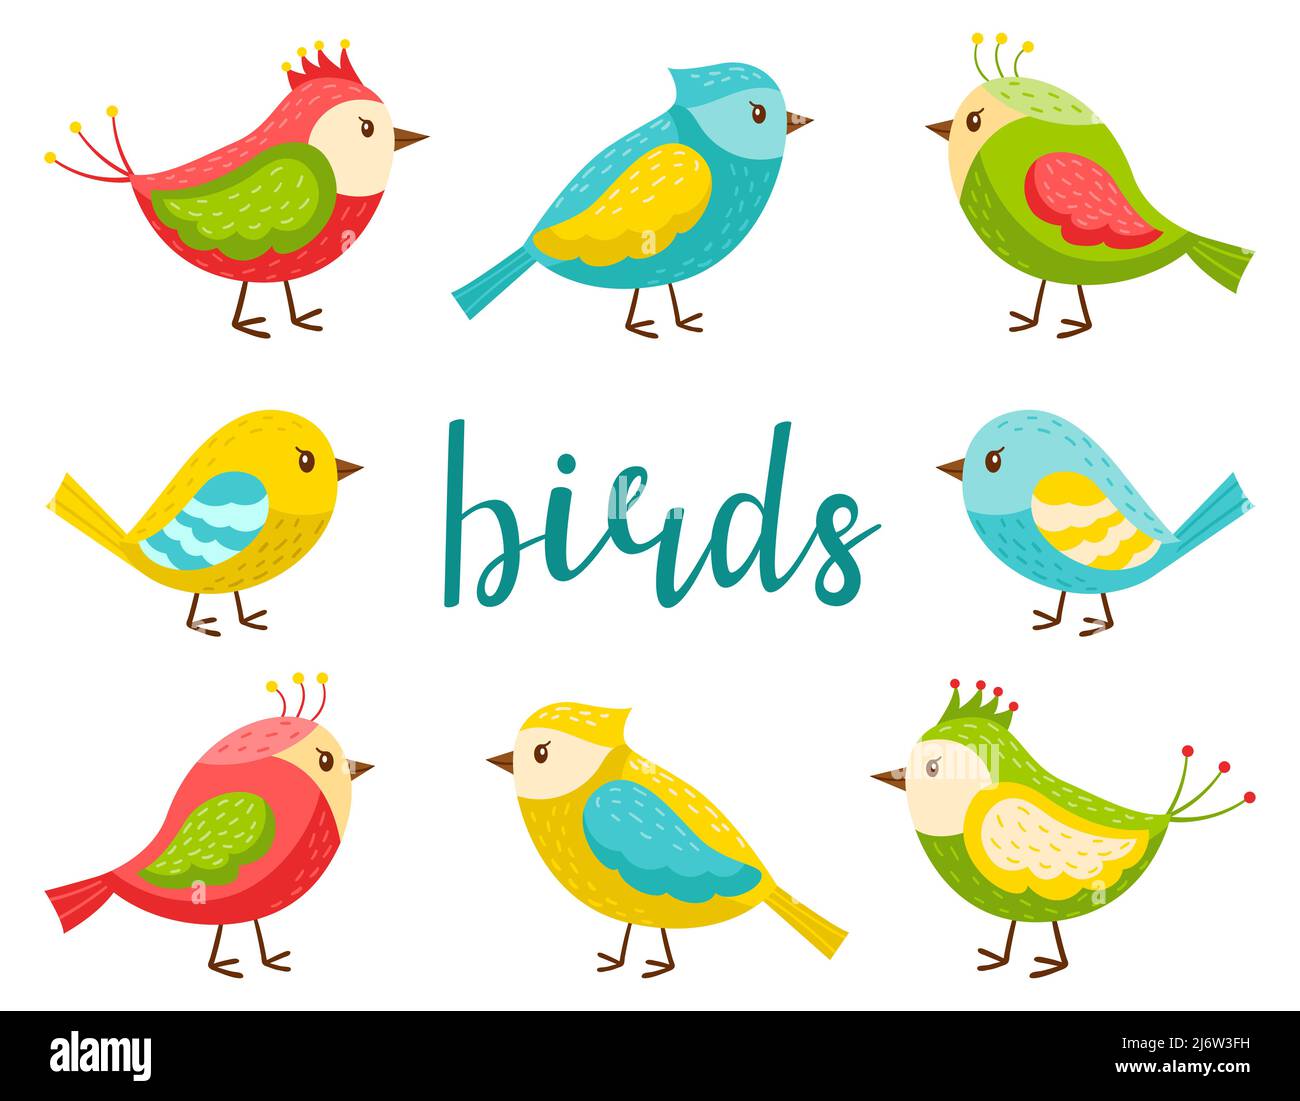 Un ensemble d'oiseaux mignons et brillants. Une collection d'oiseaux de printemps de dessin animé dans un style plat. Éléments de conception pour le printemps, l'été et les thèmes pour enfants. Color vecto Illustration de Vecteur